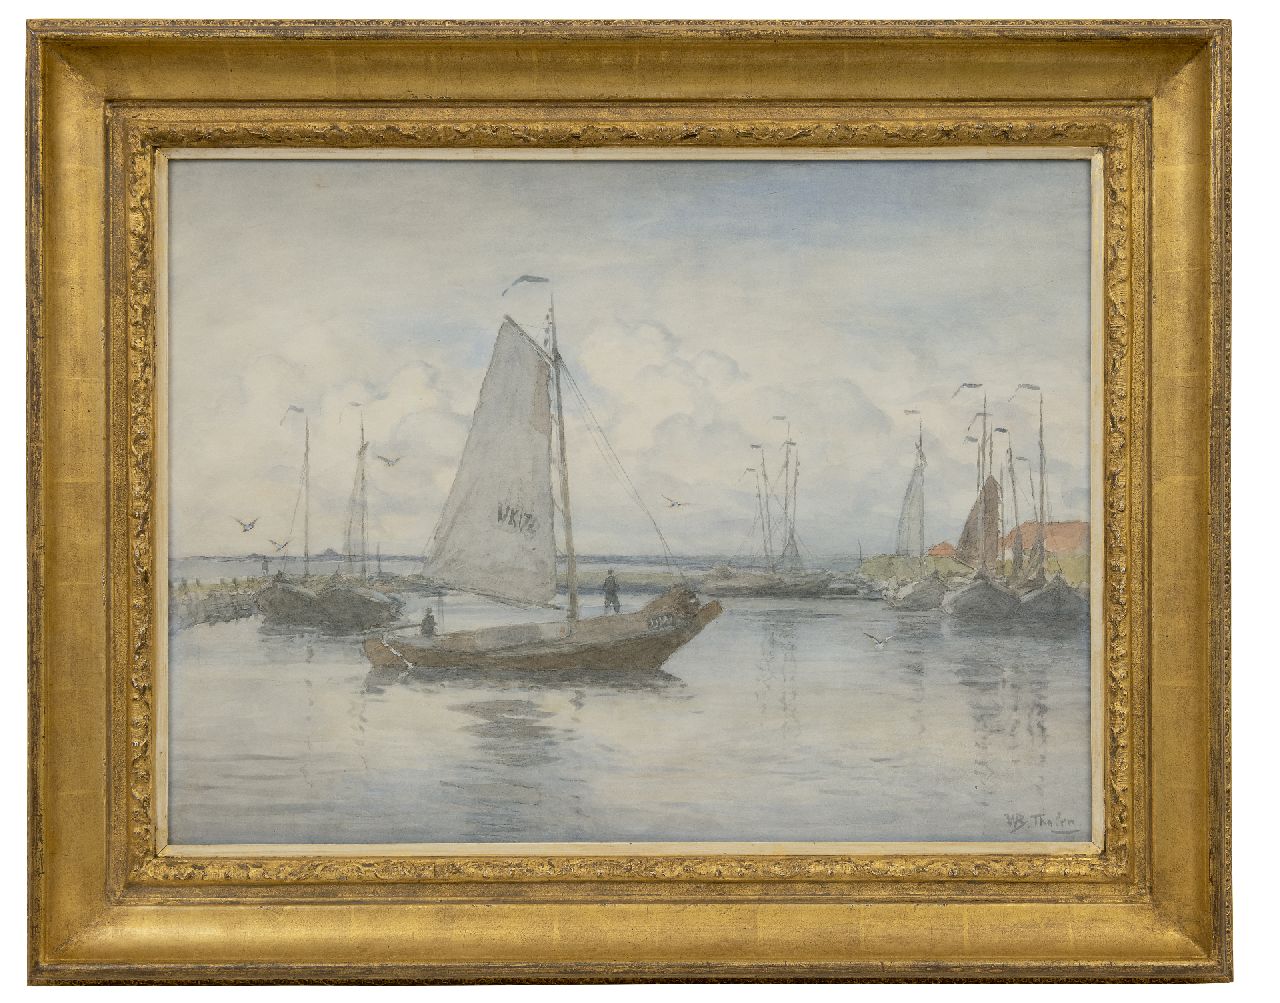 Tholen W.B.  | Willem Bastiaan Tholen, De schokker UK 17 vaart de haven van Urk binnen, aquarel op papier 51,1 x 70,0 cm, gesigneerd rechtsonder